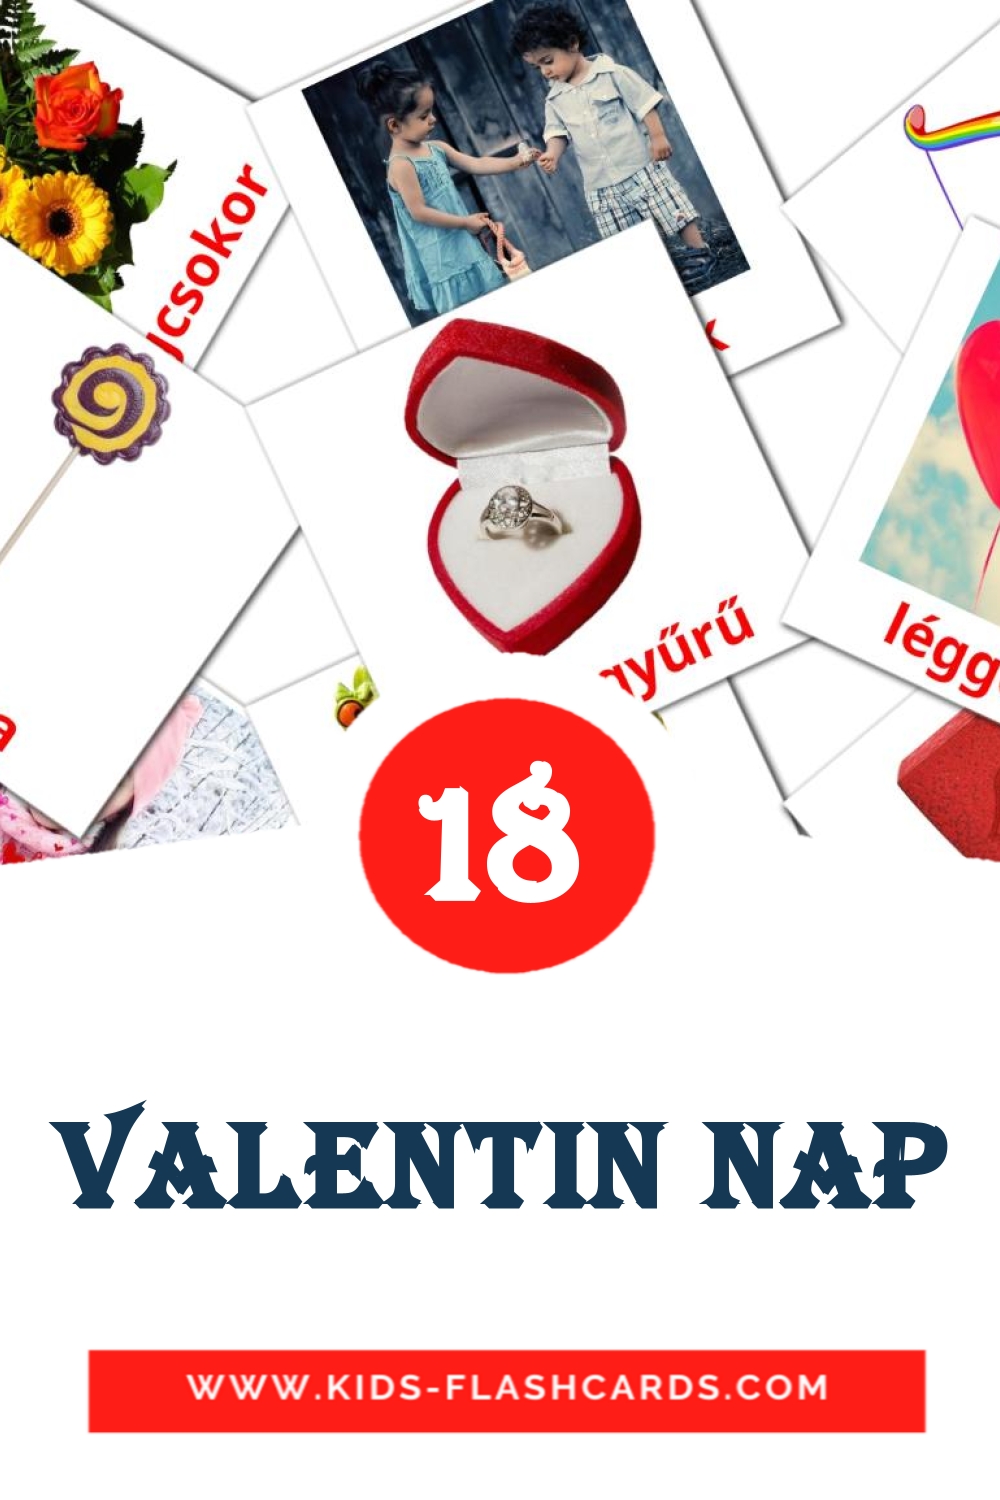 18 Cartões com Imagens de Valentin nap para Jardim de Infância em hungaro